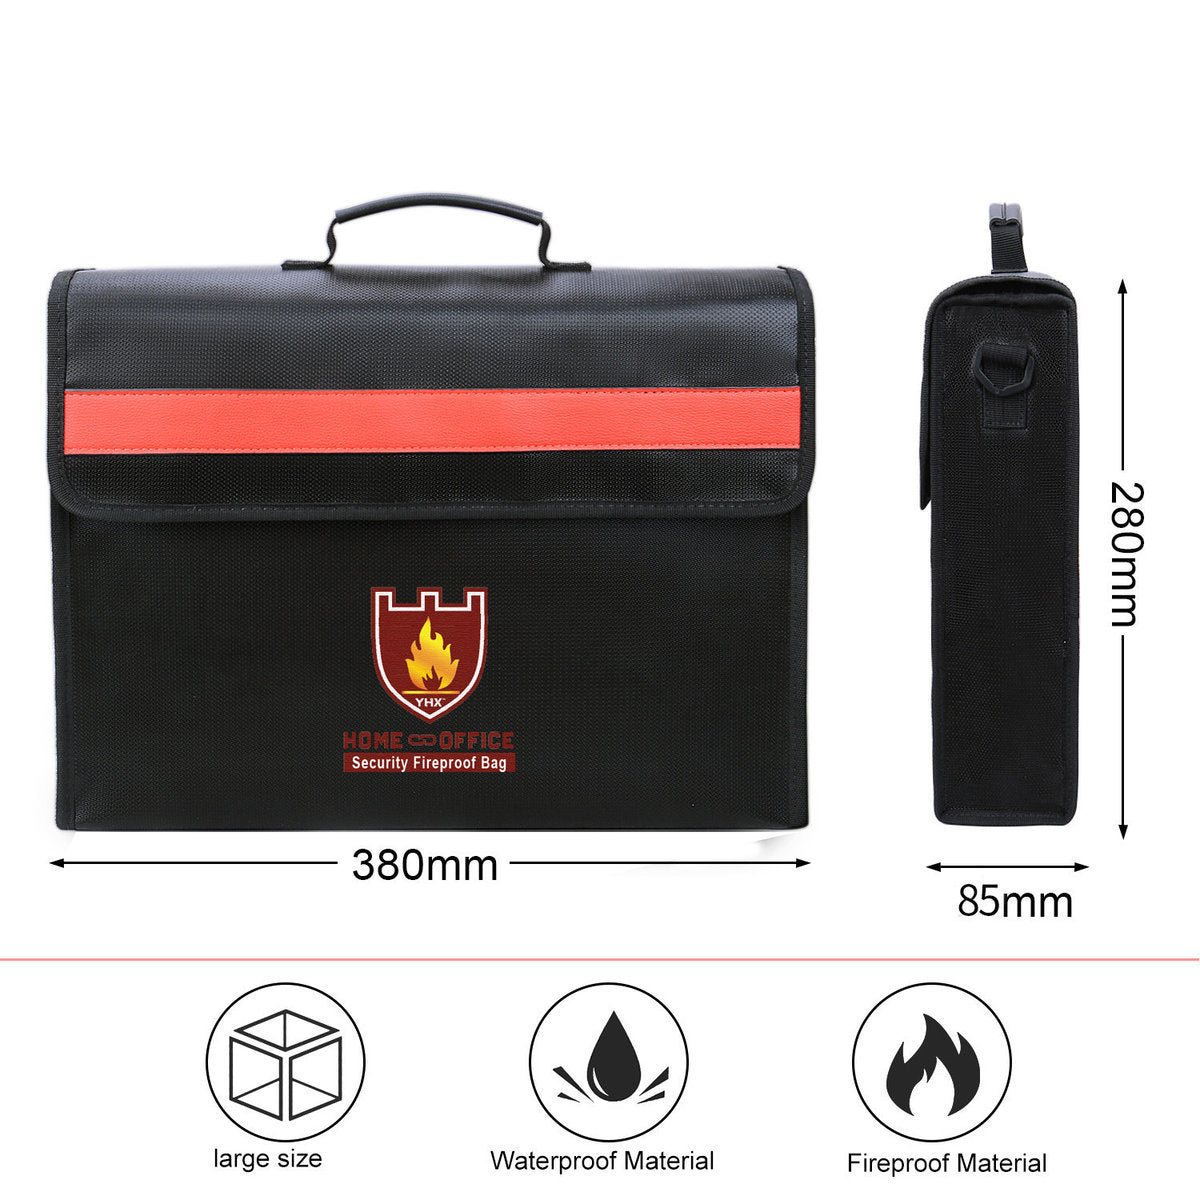 (升级双防) 防火防水公事包重要文件证件收纳保护袋公文袋38x28x8.5cm 旅行袋